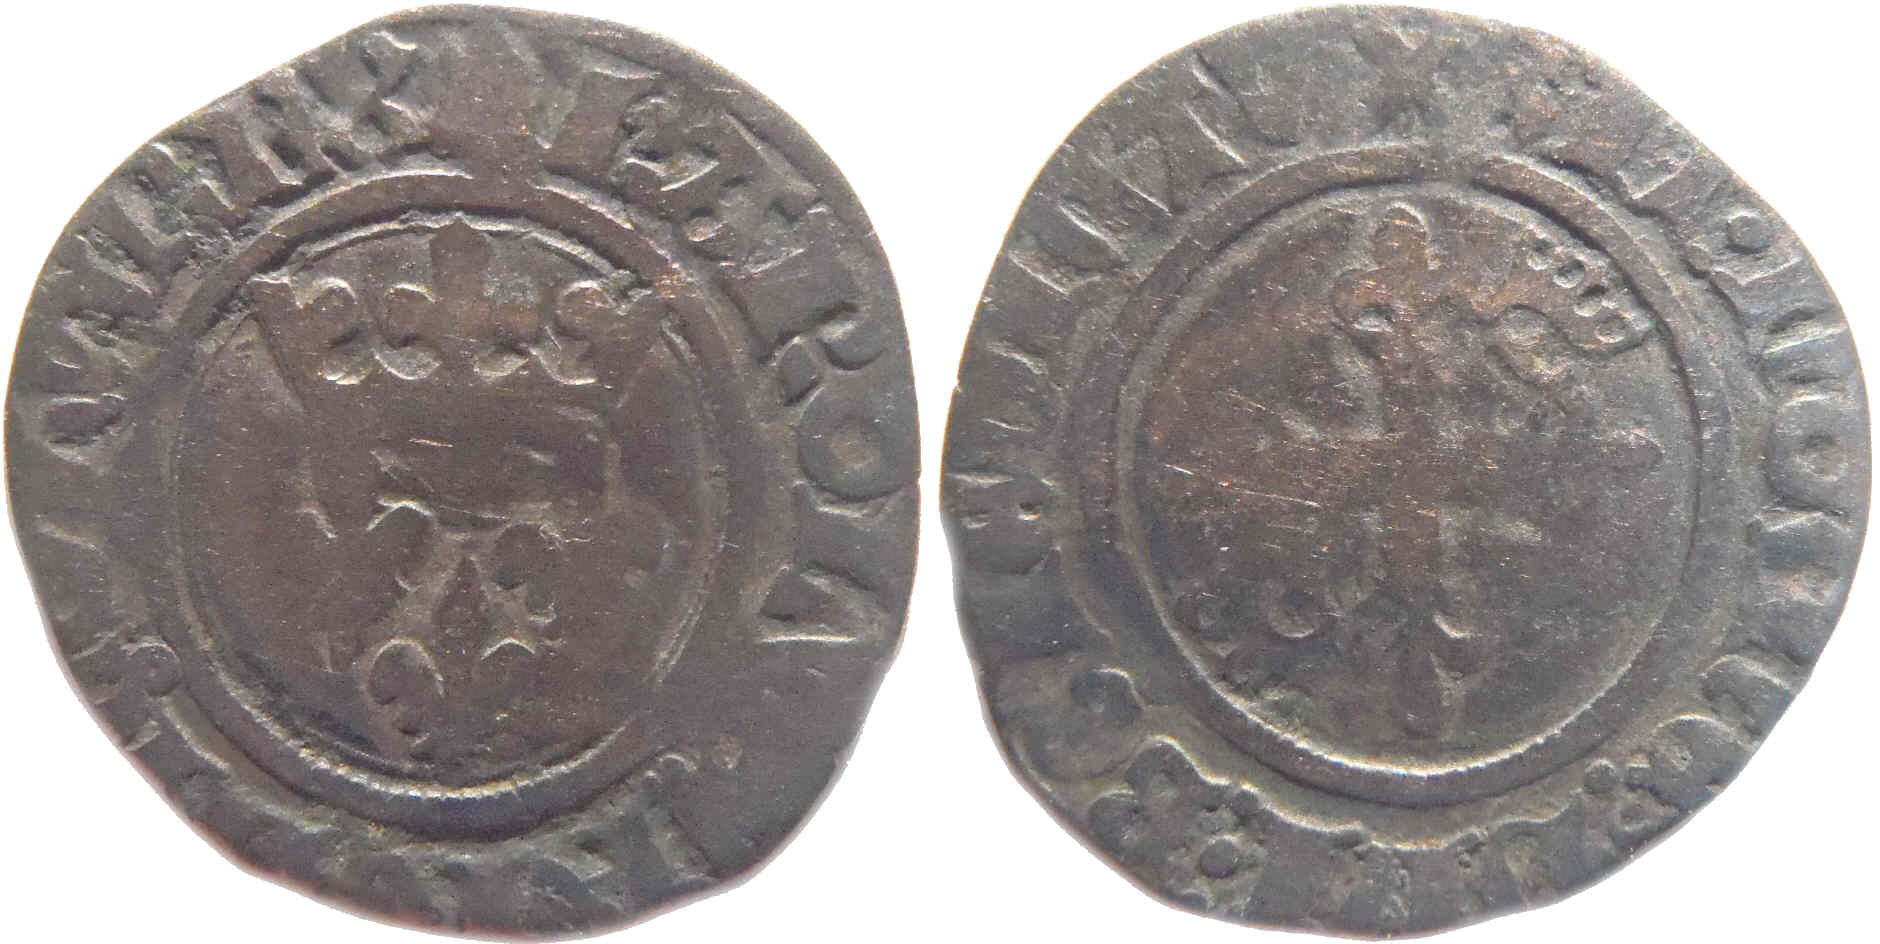 Approche typologique et chronologique des émissions de gros dits «florettes» au nom de Charles VI produites à Mâcon entre 1417 et 1421 – partie 10 – complément 1